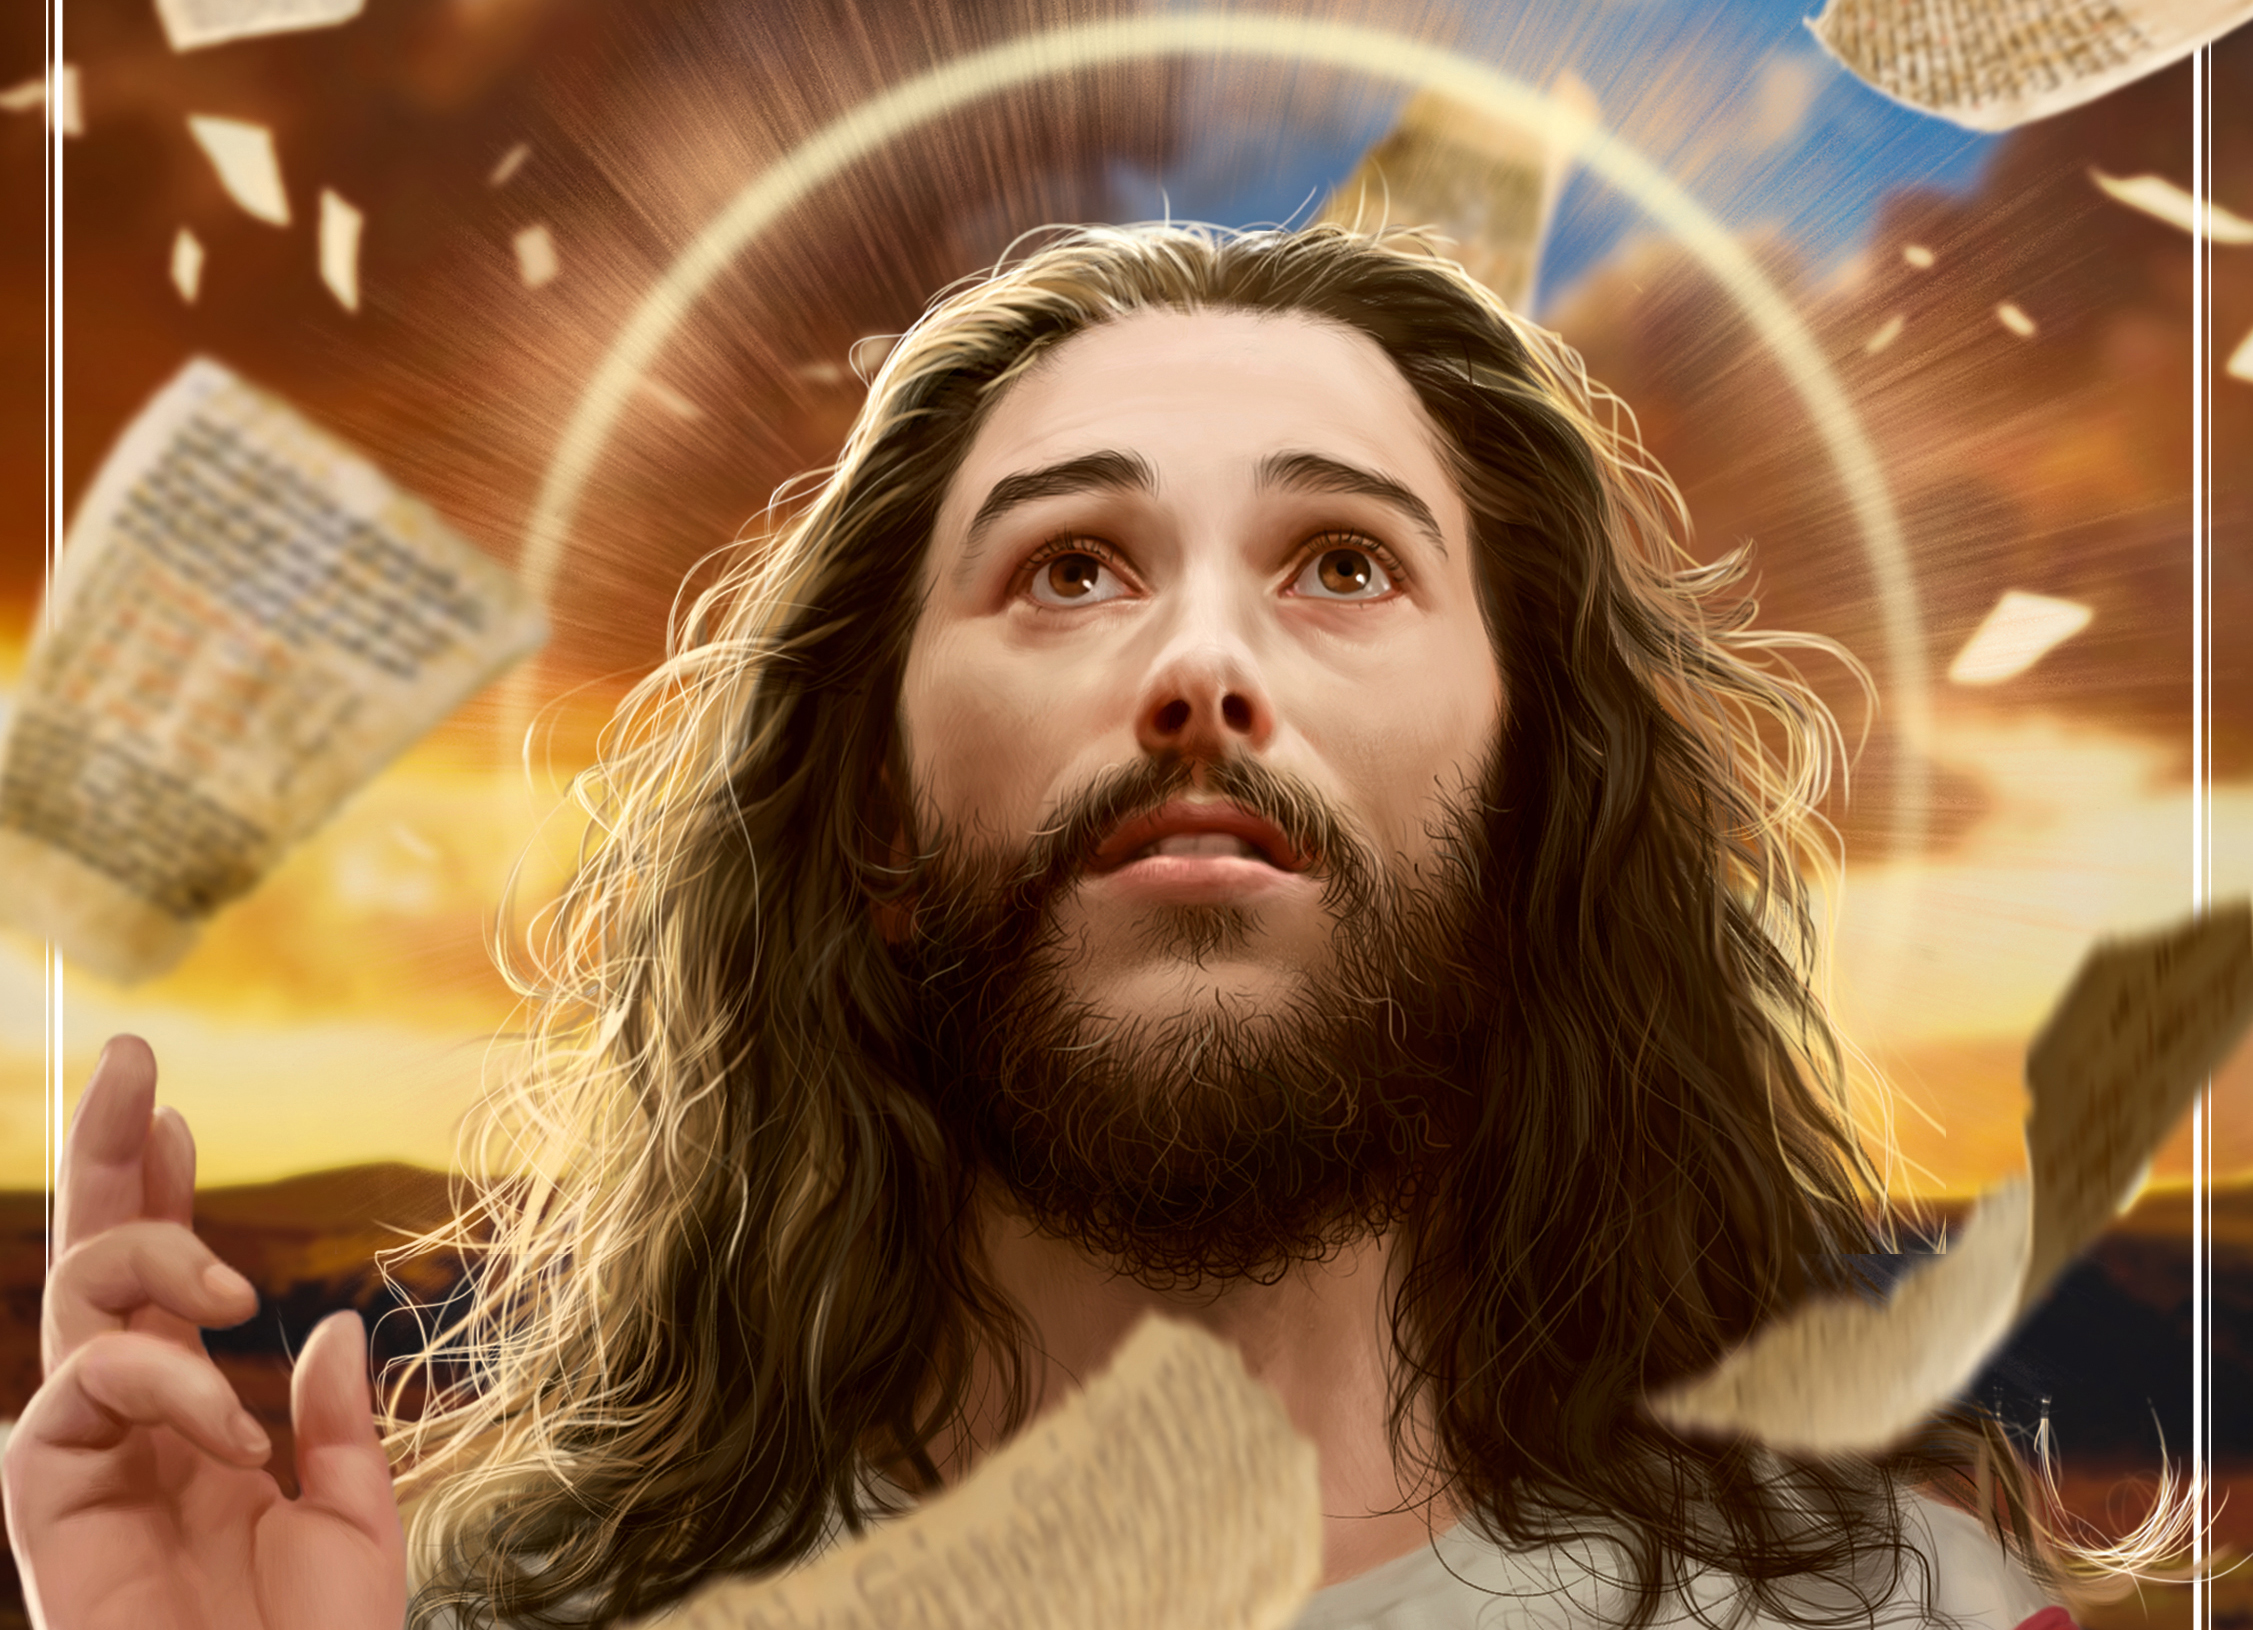 Fotos de jesus para perfil